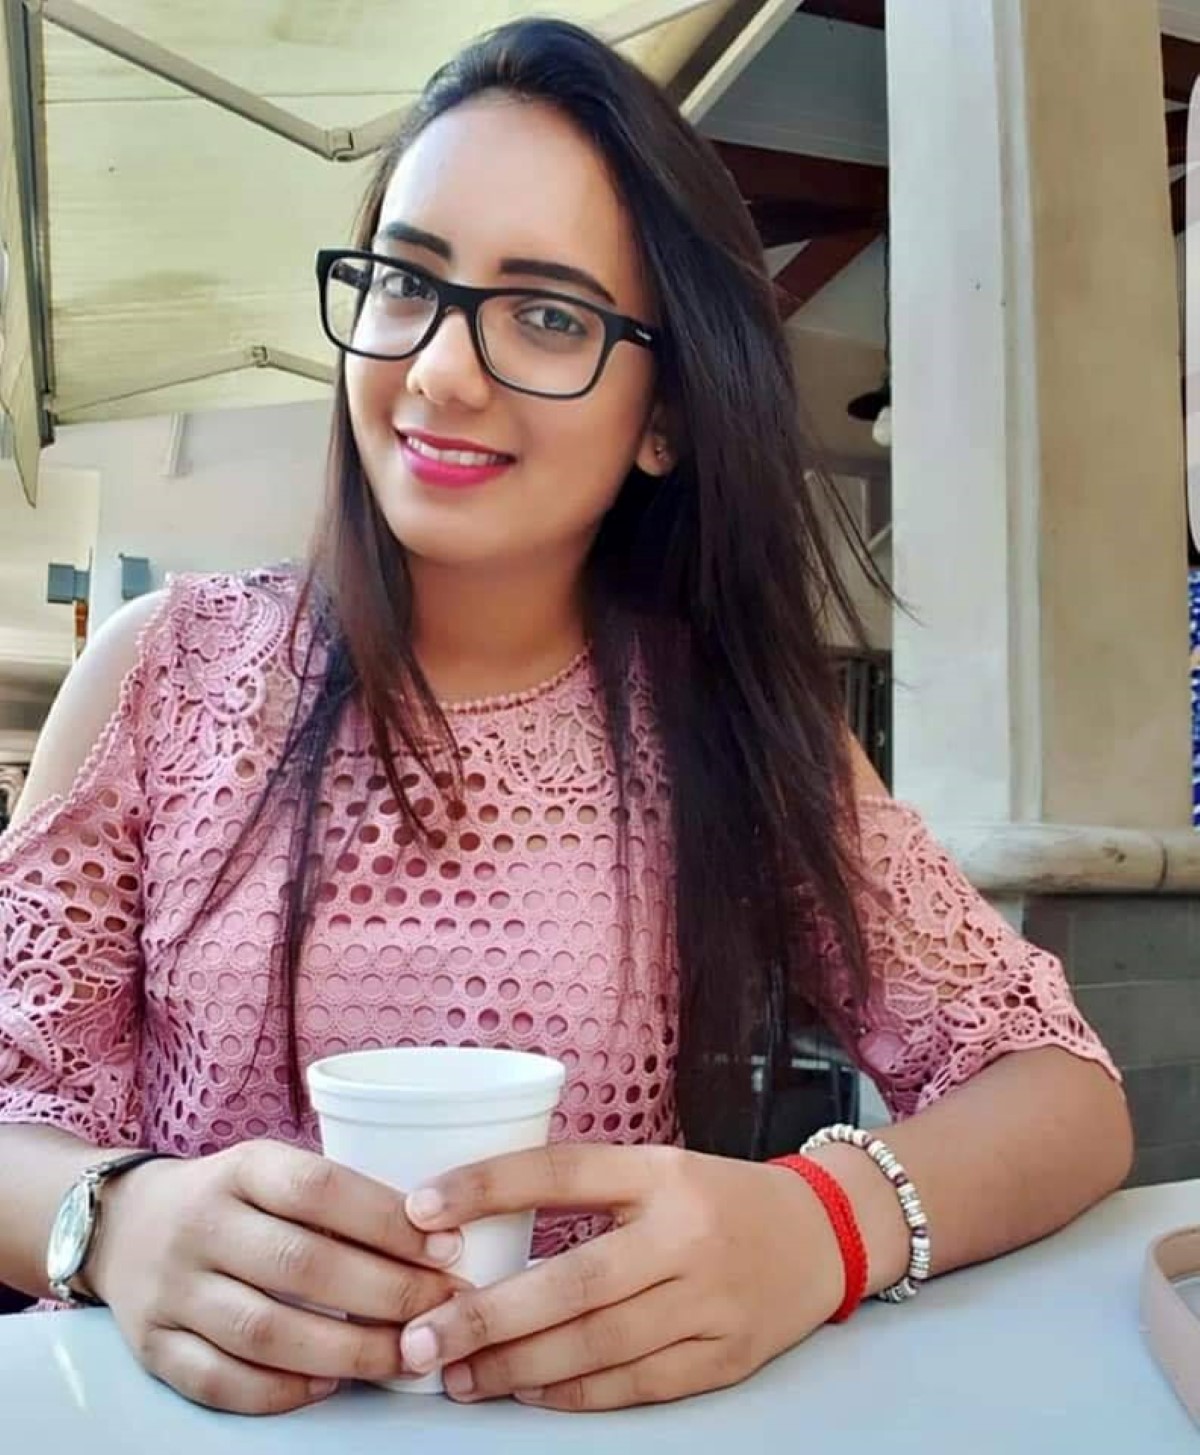 Le cas de Reshma Devi Dookhit émeut les internautes